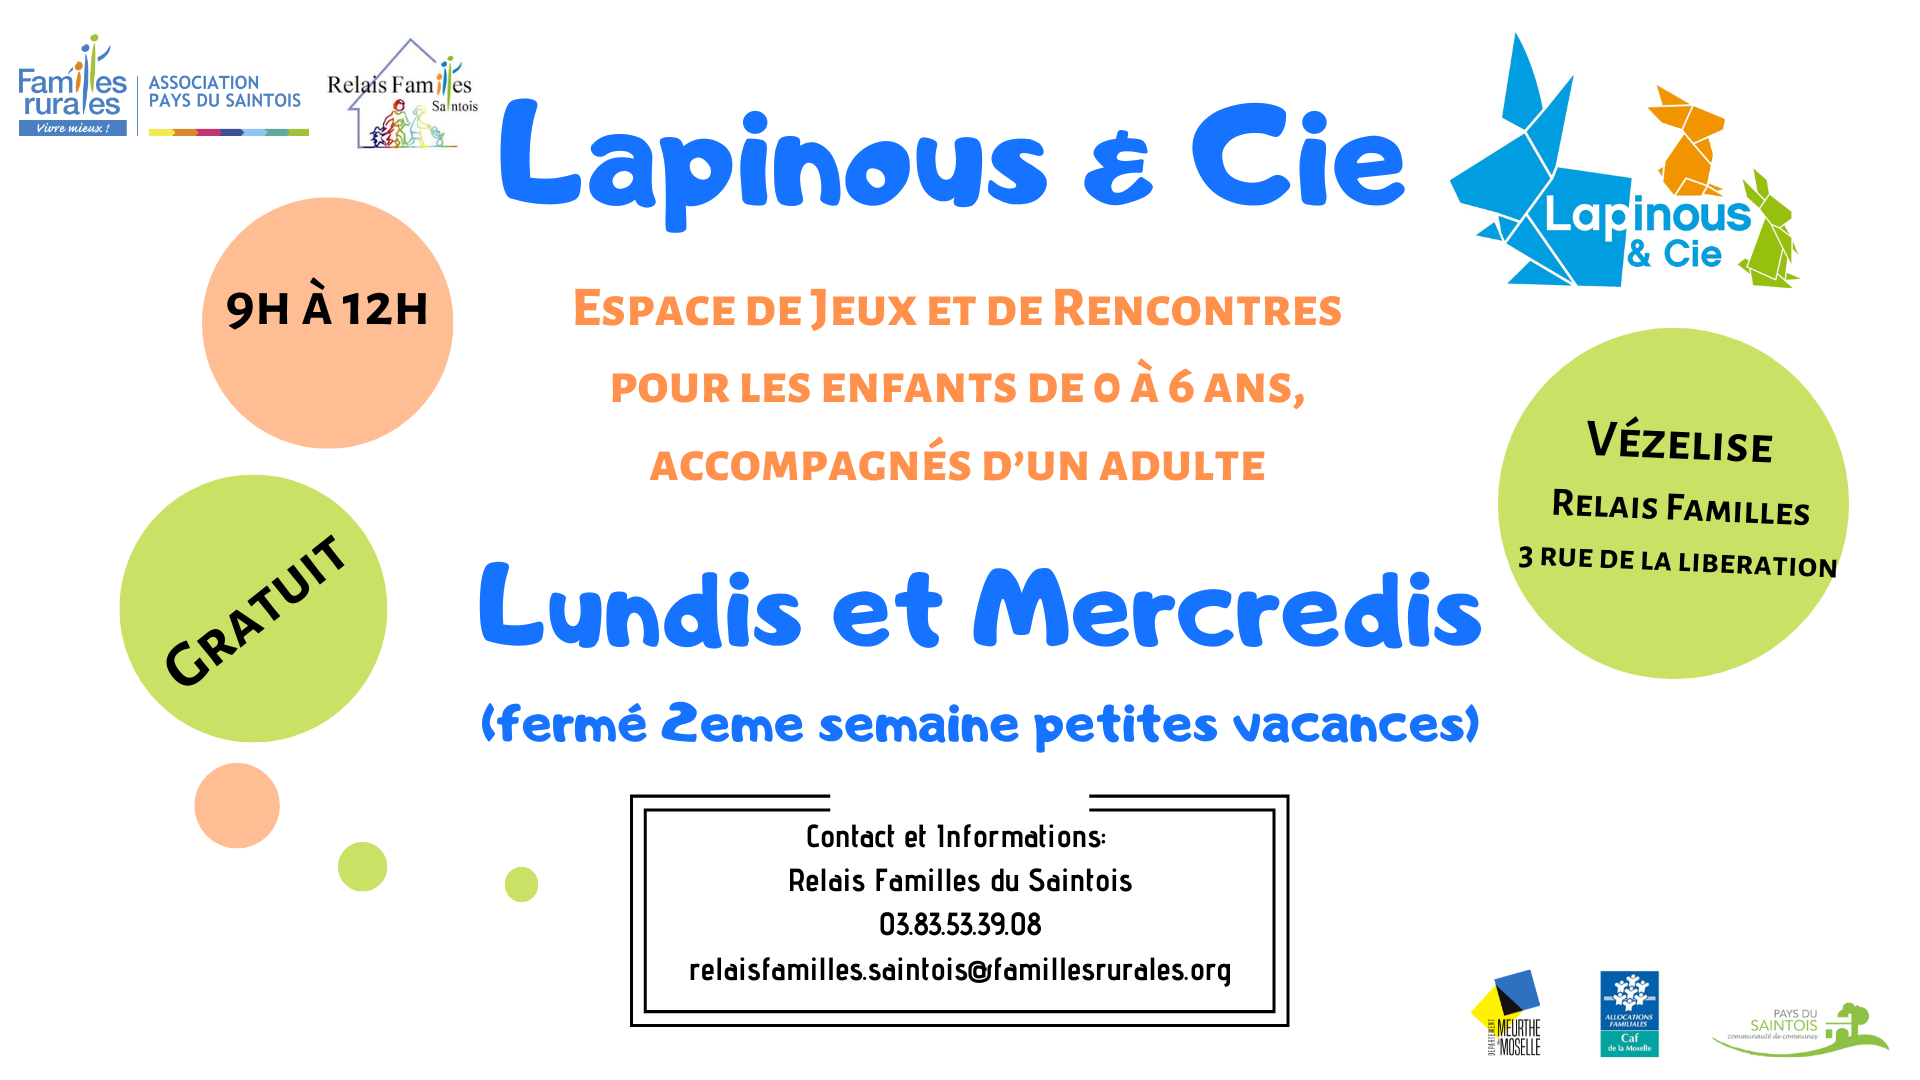 FERMETURE DU LIEU D'ACCUEIL ENFANTS-PARENTS - Mairie de Villejust